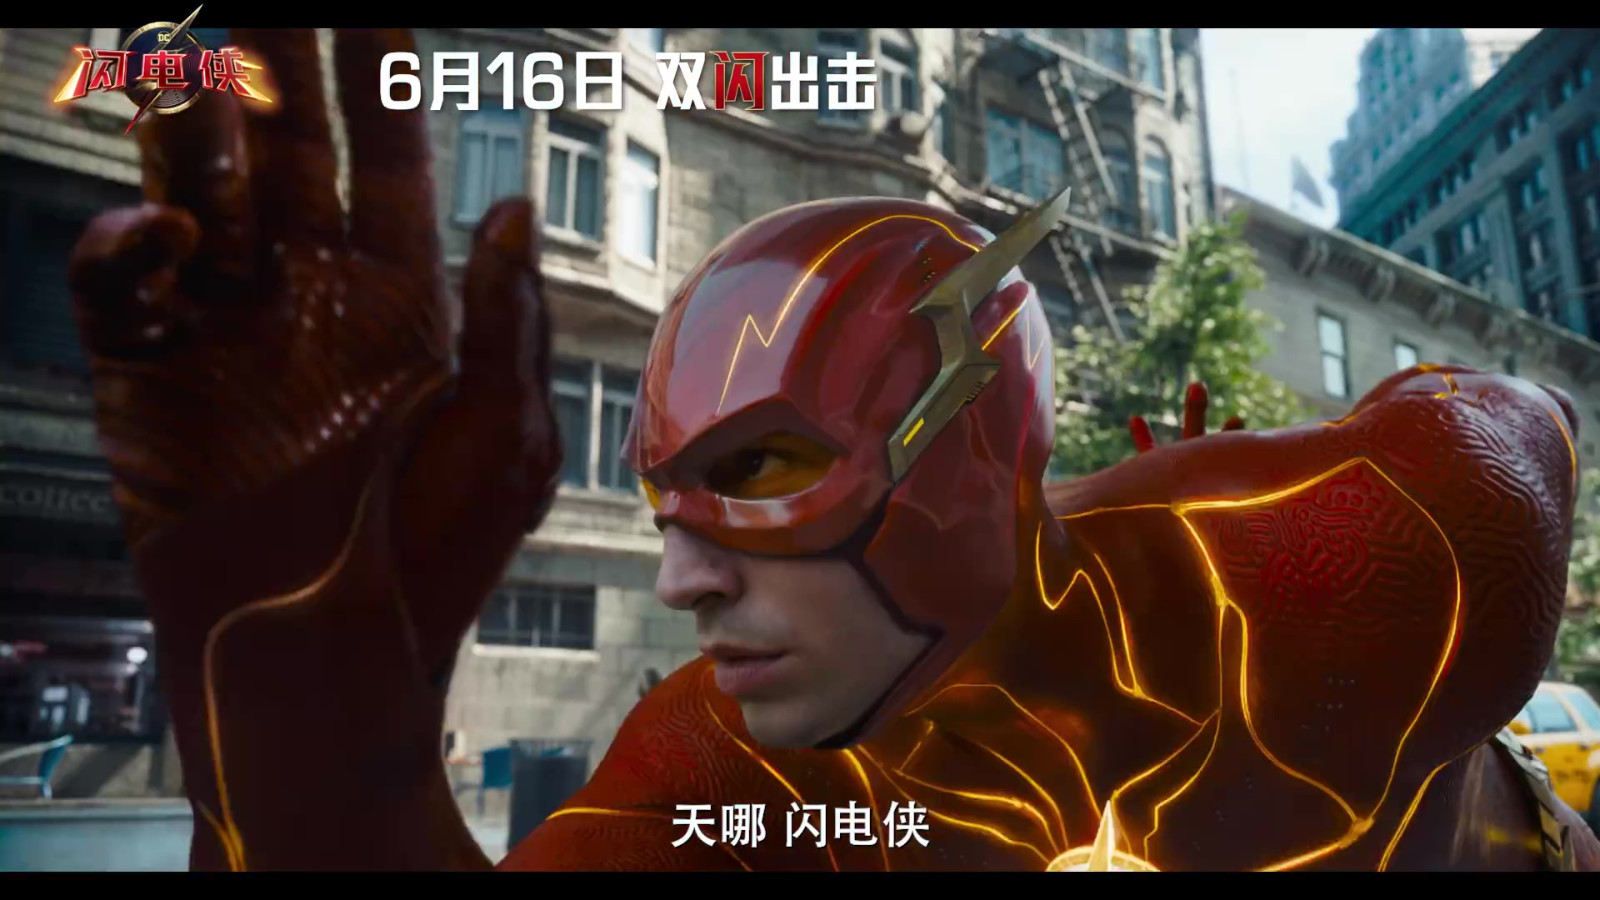 DC超级英雄新片《闪电侠》发布中国独家预告 2D版本全国6月16日上映